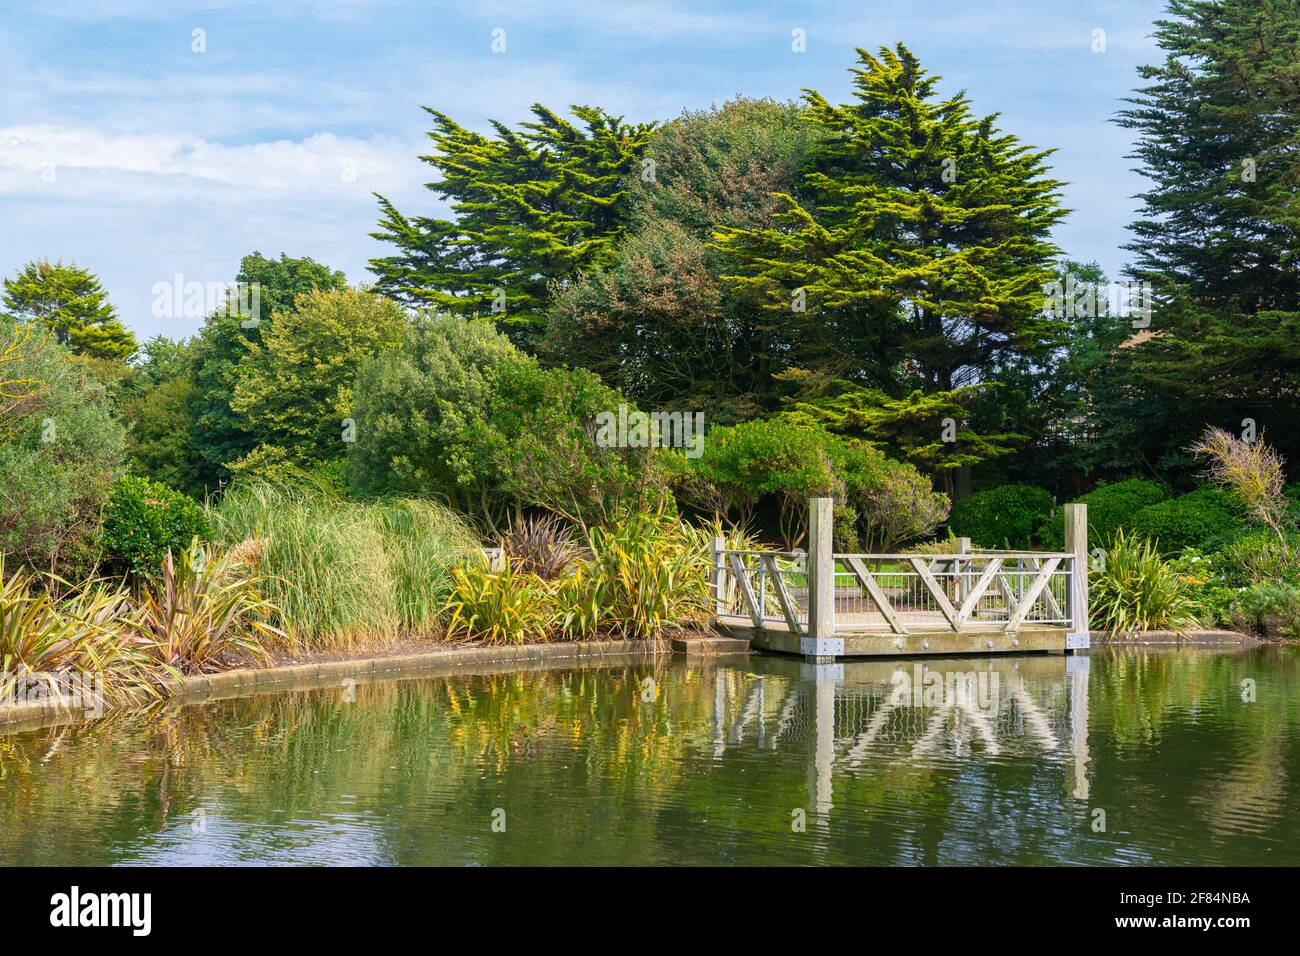 Scène paysage de verdure et d'une plate-forme d'observation en bois par un petit lac en été dans Mewsbrook Park, Littlehampton, West Sussex, Angleterre, Royaume-Uni. Banque D'Images